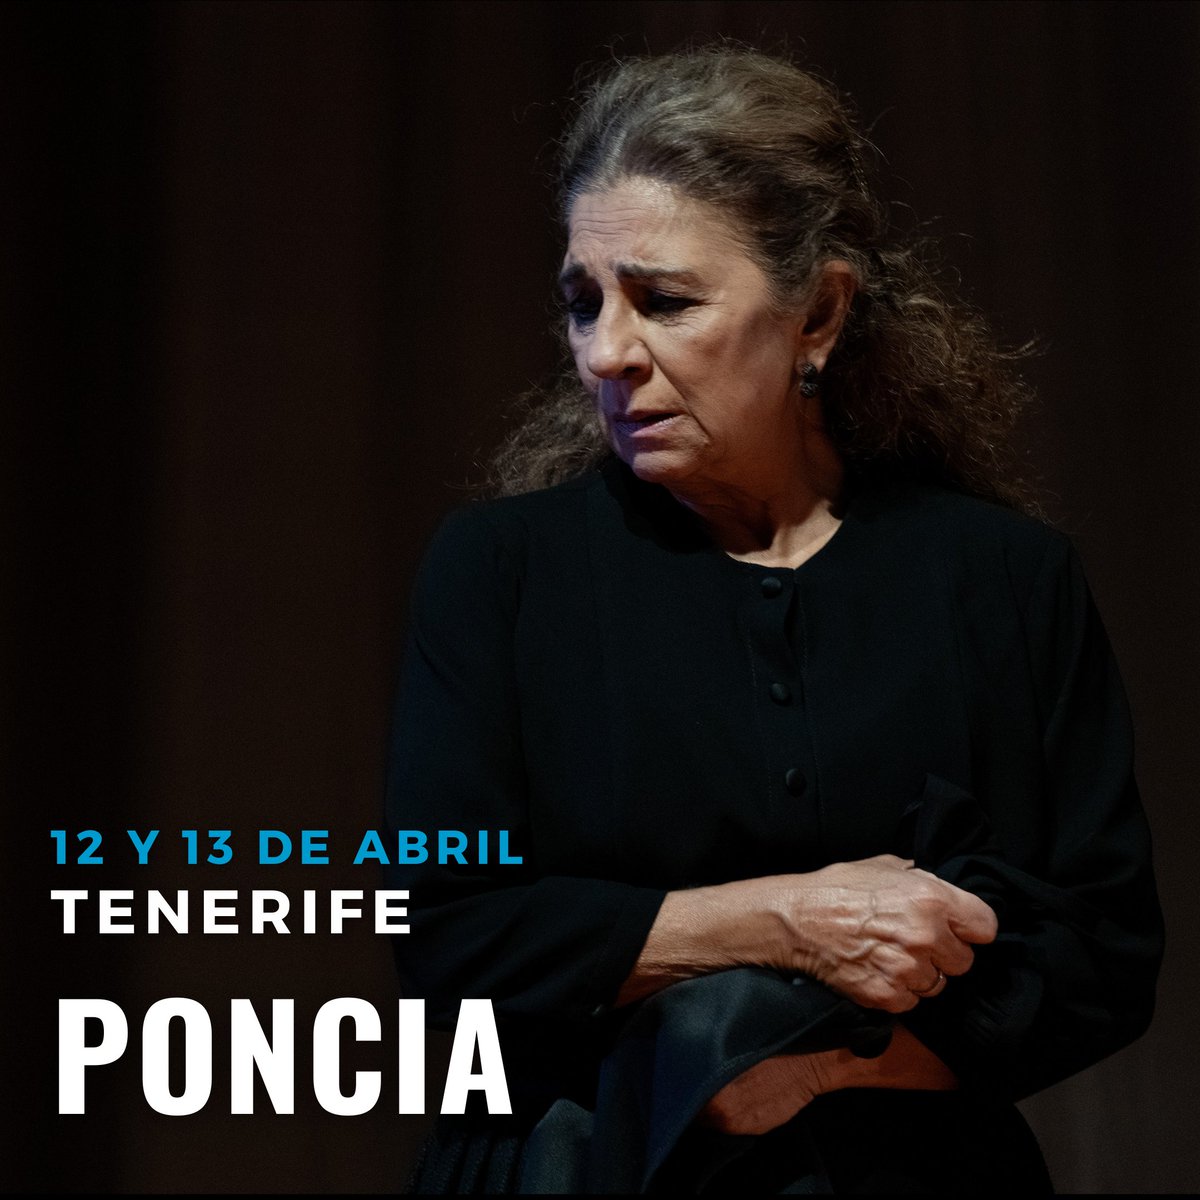 Los días 12 y 13 de abril🗓️ , @sarandonga55 y su #Poncia llegan al Teatro Guimerá de Sta. Cruz de Tenerife🏝️ Una obra escrita y dirigida por #LuisLuque a partir de 'La casa de Bernarda Alba' de #Lorca 🌹 ¡Os esperamos!🎭 @JCimarro